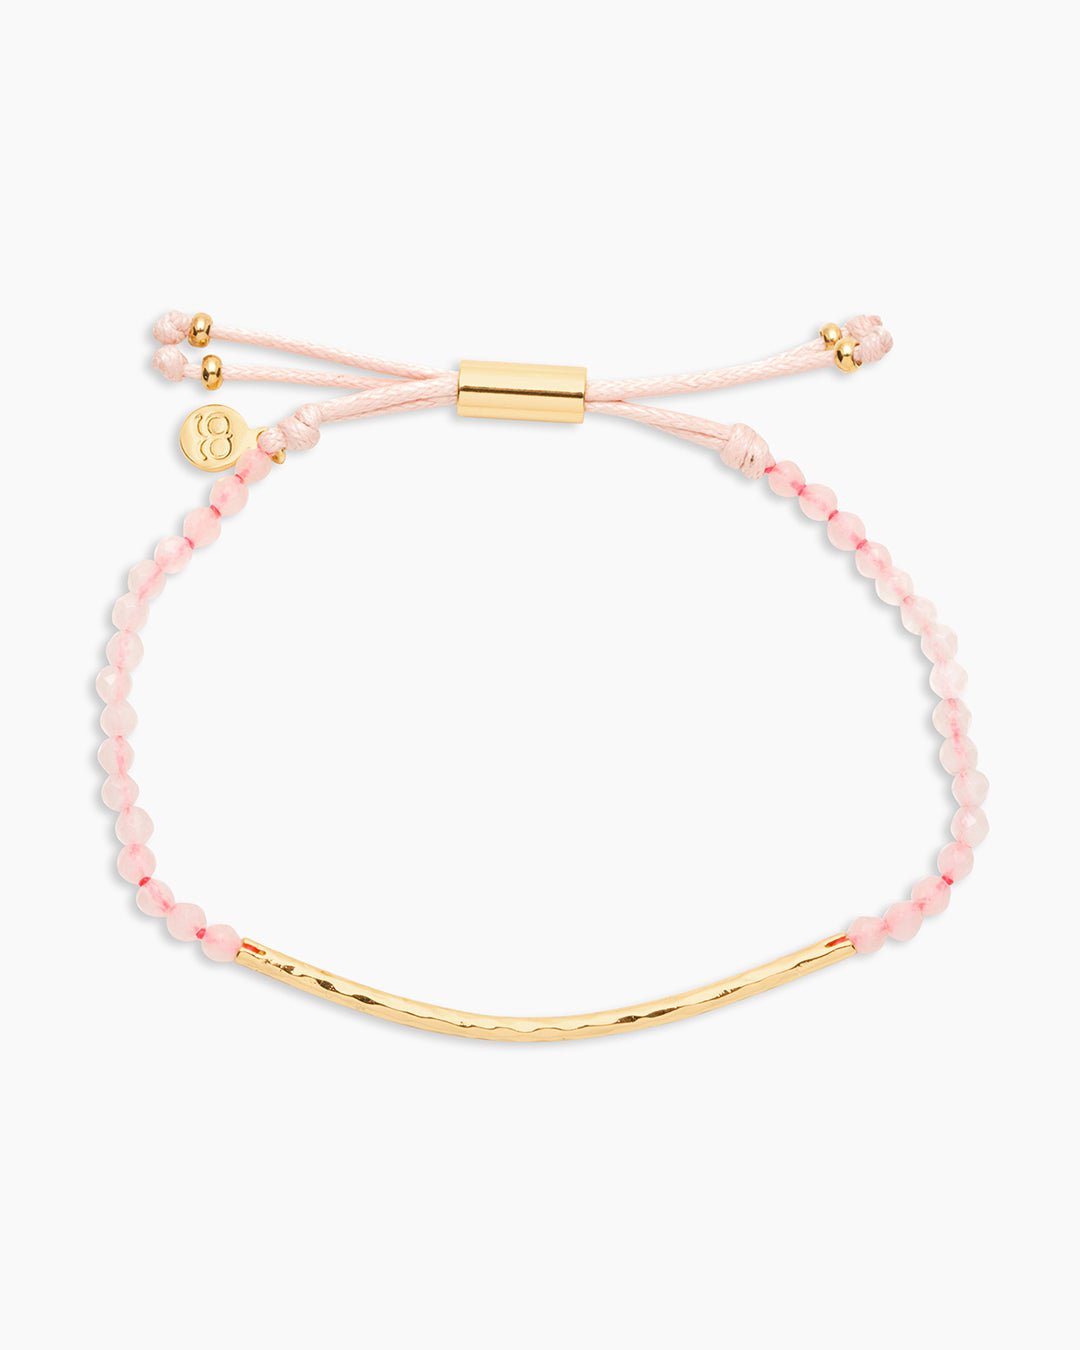 Power Gemstone Bracelet for Love || option::Gold Plated, Rose Quartz